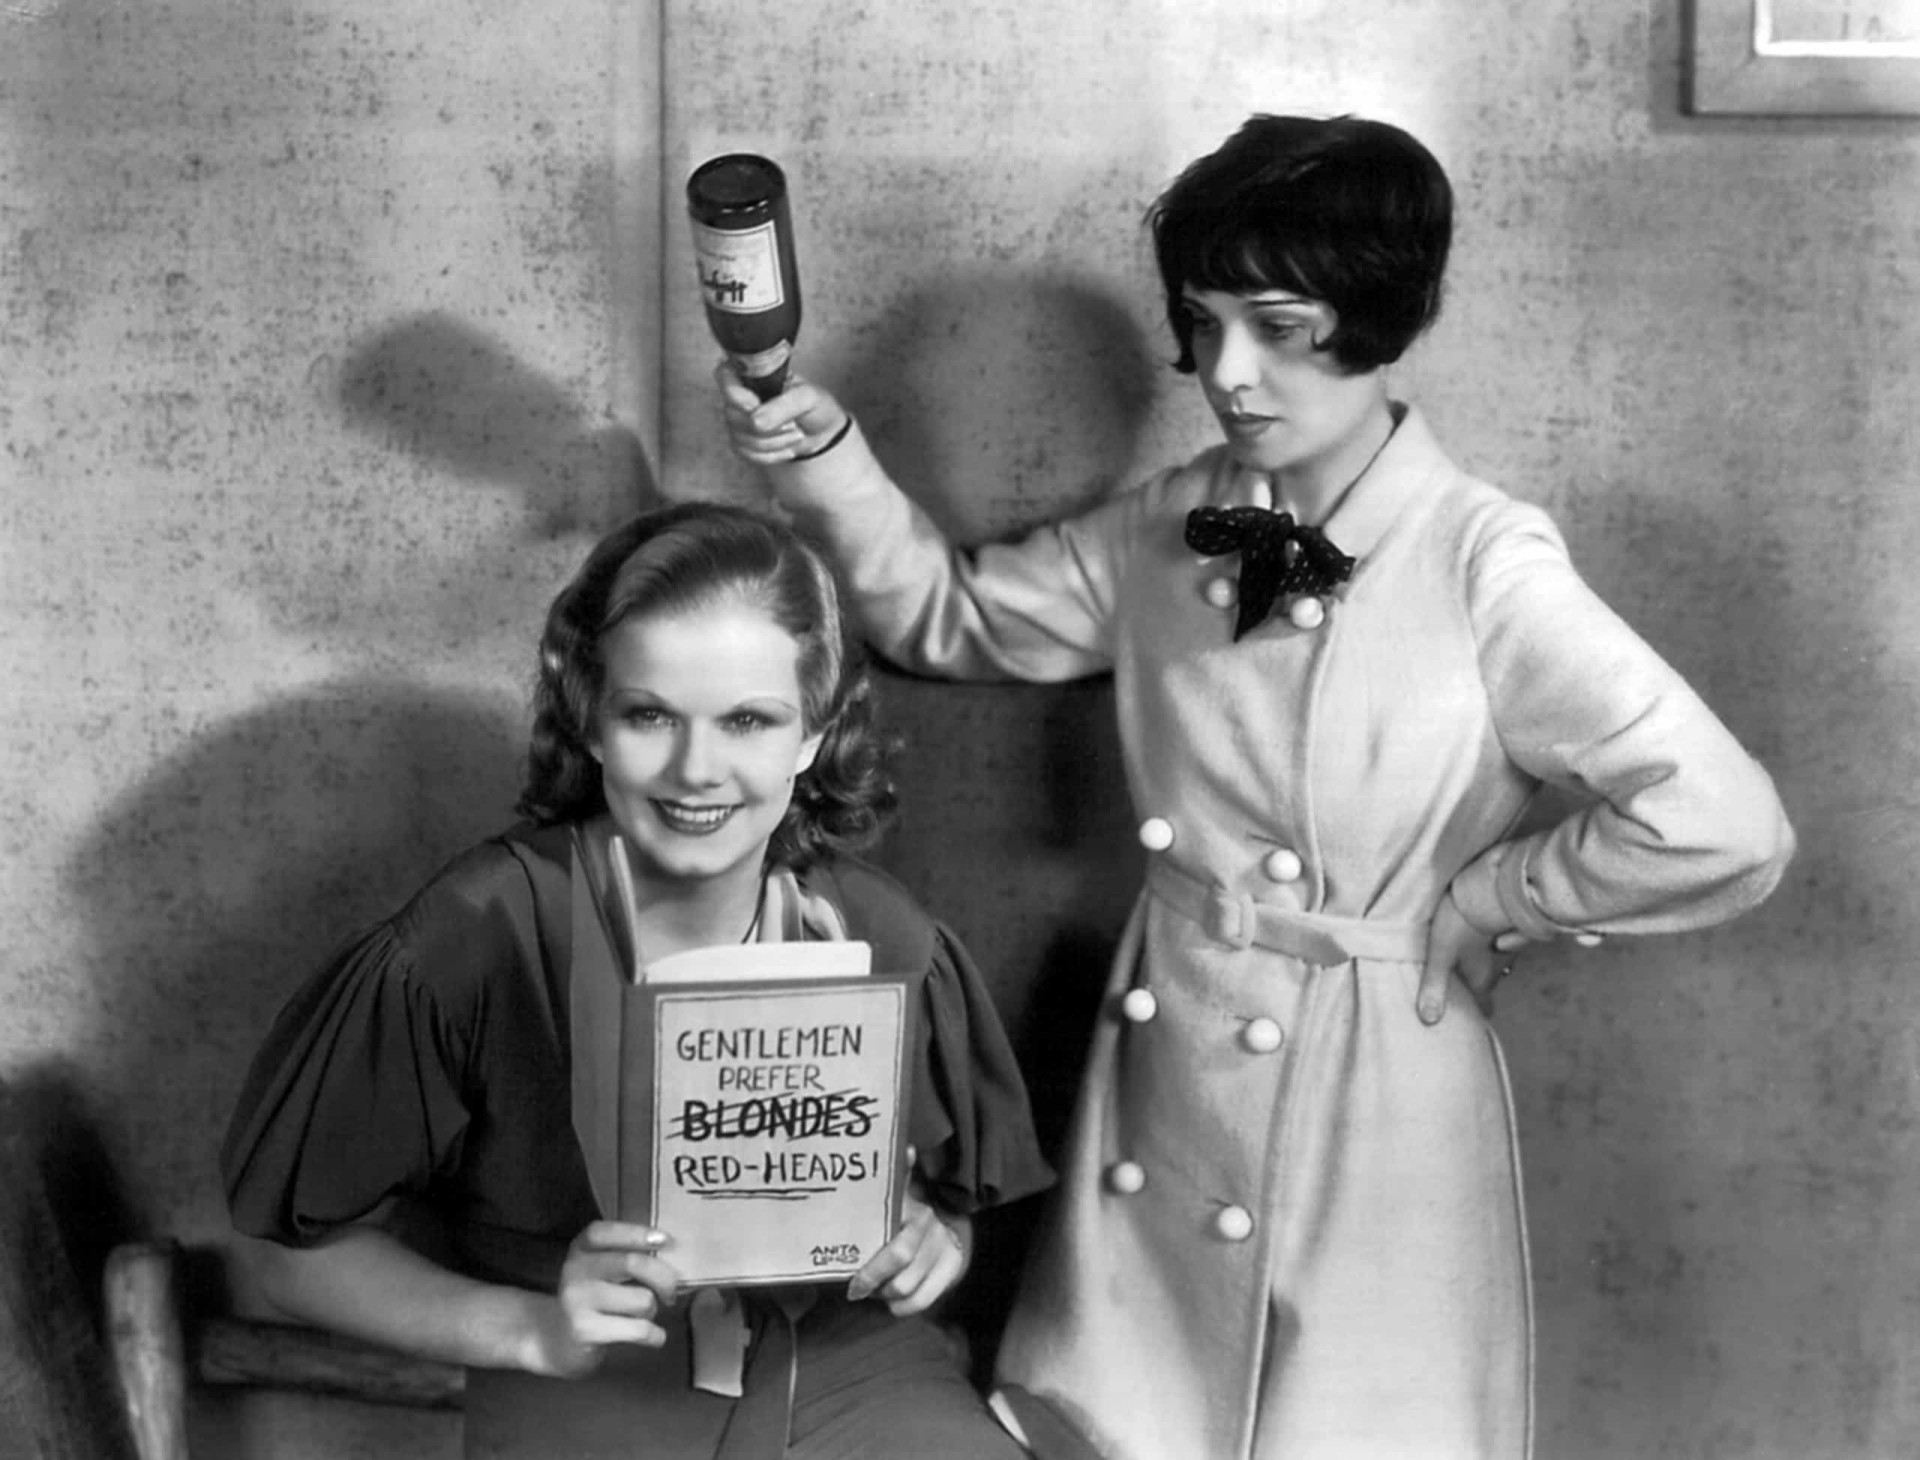 <p>Ihre frühen Filme konzentrierten sich mehr auf ihr Aussehen als auf ihre schauspielerischen Fähigkeiten, aber 1932 zeigte Harlow ihre komödiantischen Fähigkeiten und spielte mit ihrem Ruf als blonde Sexbombe, indem sie in dem Film "Feuerkopf" mitspielte.</p><p>Sie können auch mögen:<a href="https://de.starsinsider.com/n/377519?utm_source=msn.com&utm_medium=display&utm_campaign=referral_description&utm_content=487809v1"> Channing Tatum ist auch Opfer eines gruseligen Promi-Stalkers</a></p>